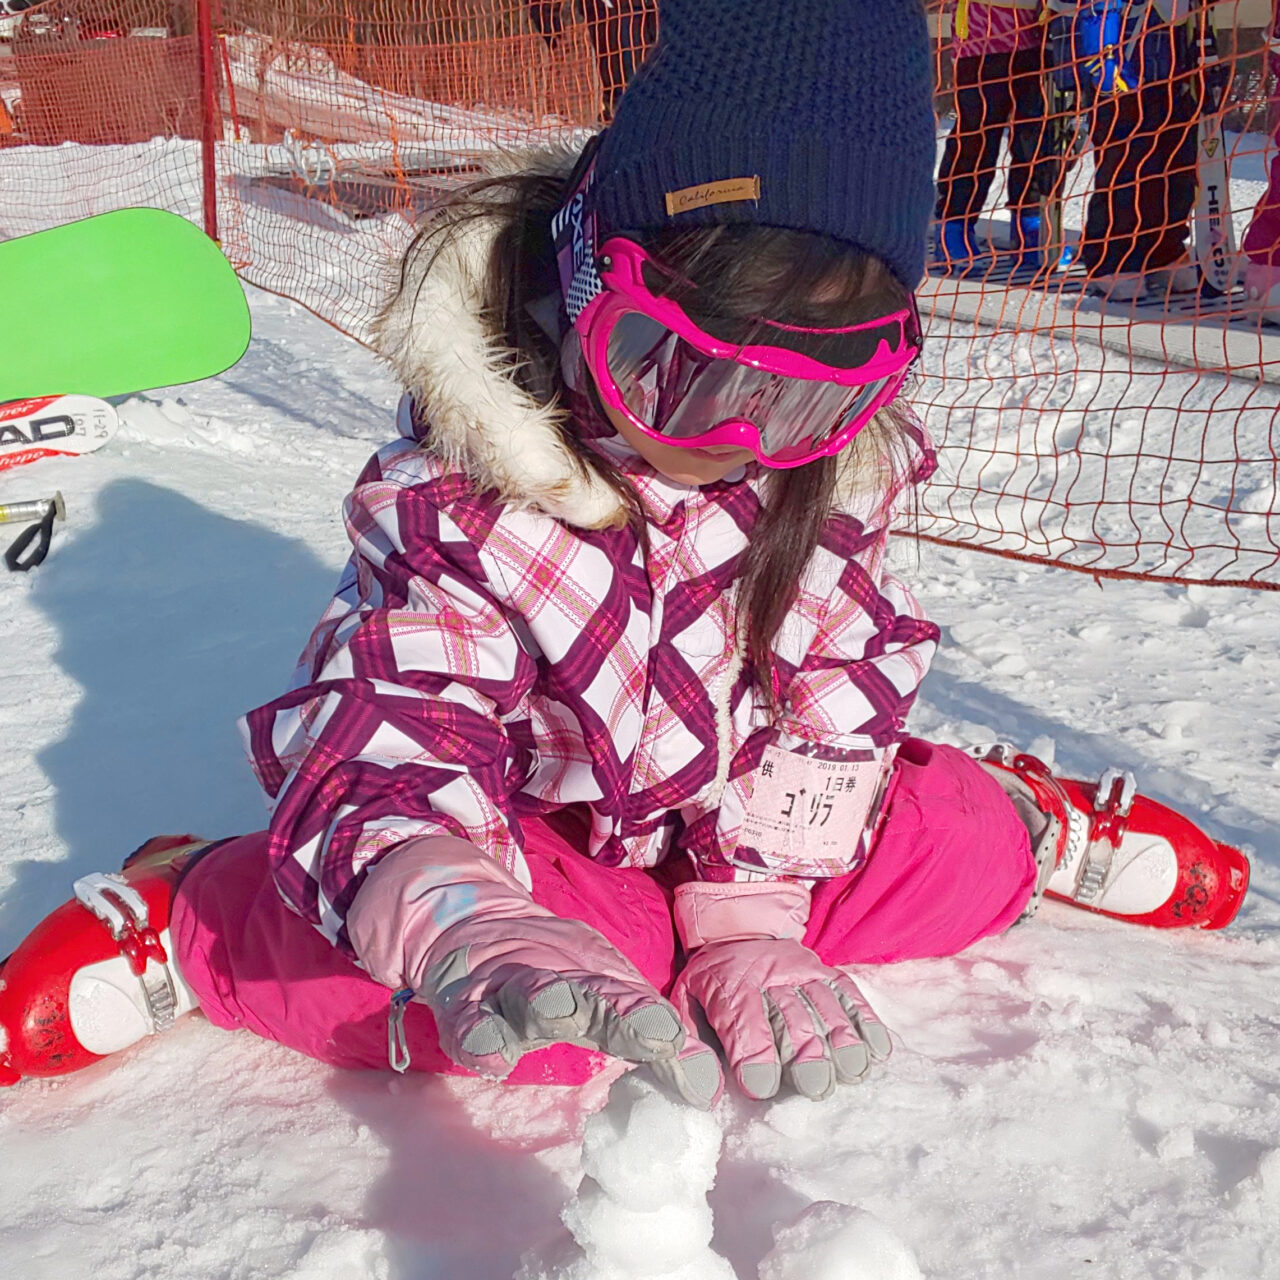 ピンク色の防寒着とゴーグルをして雪景色の中、雪遊びする小倉美咲（おぐらみさき）。